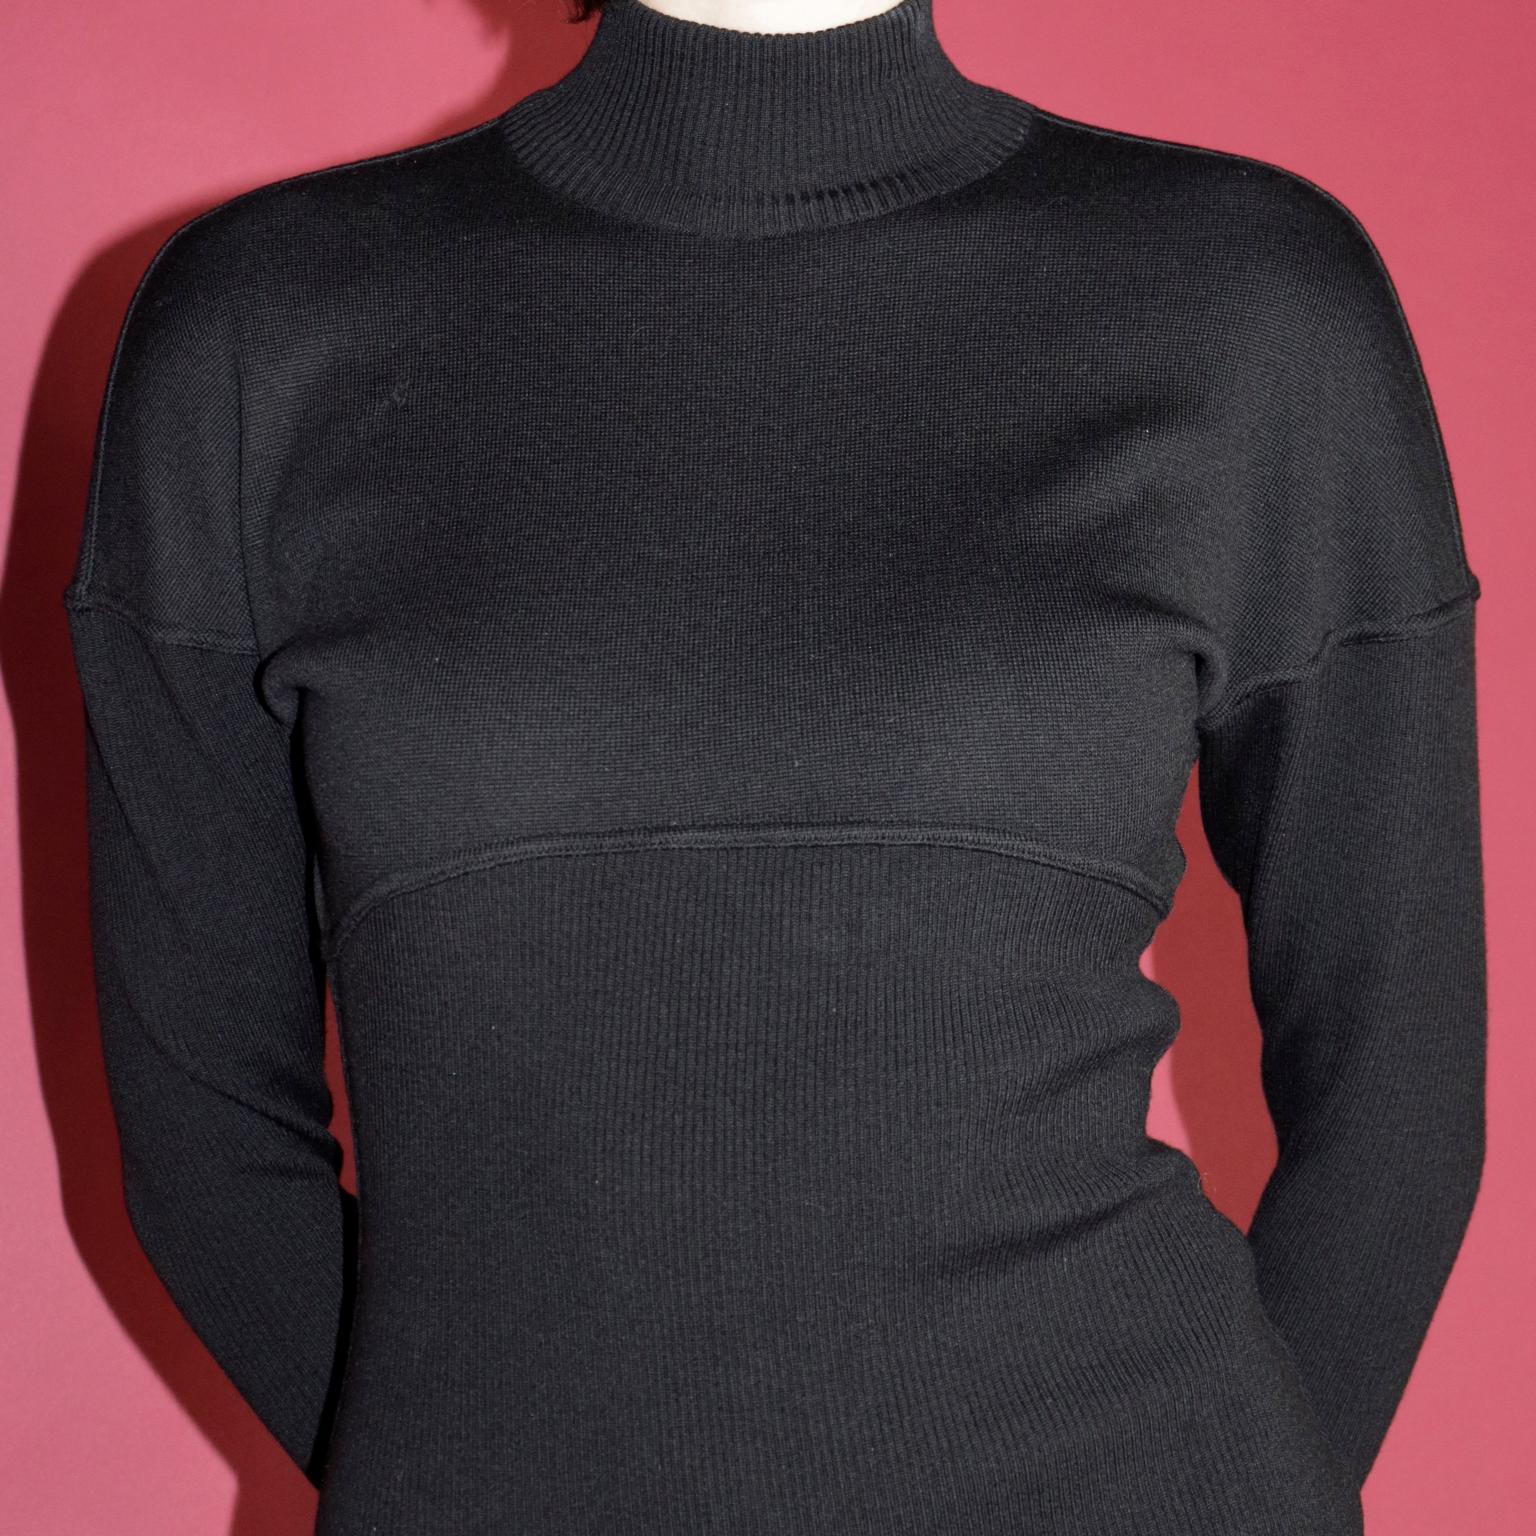 Azzedine Alaia F/W 1986 Vintage Black Knit Bodycon Zipper Dress For Sale 2